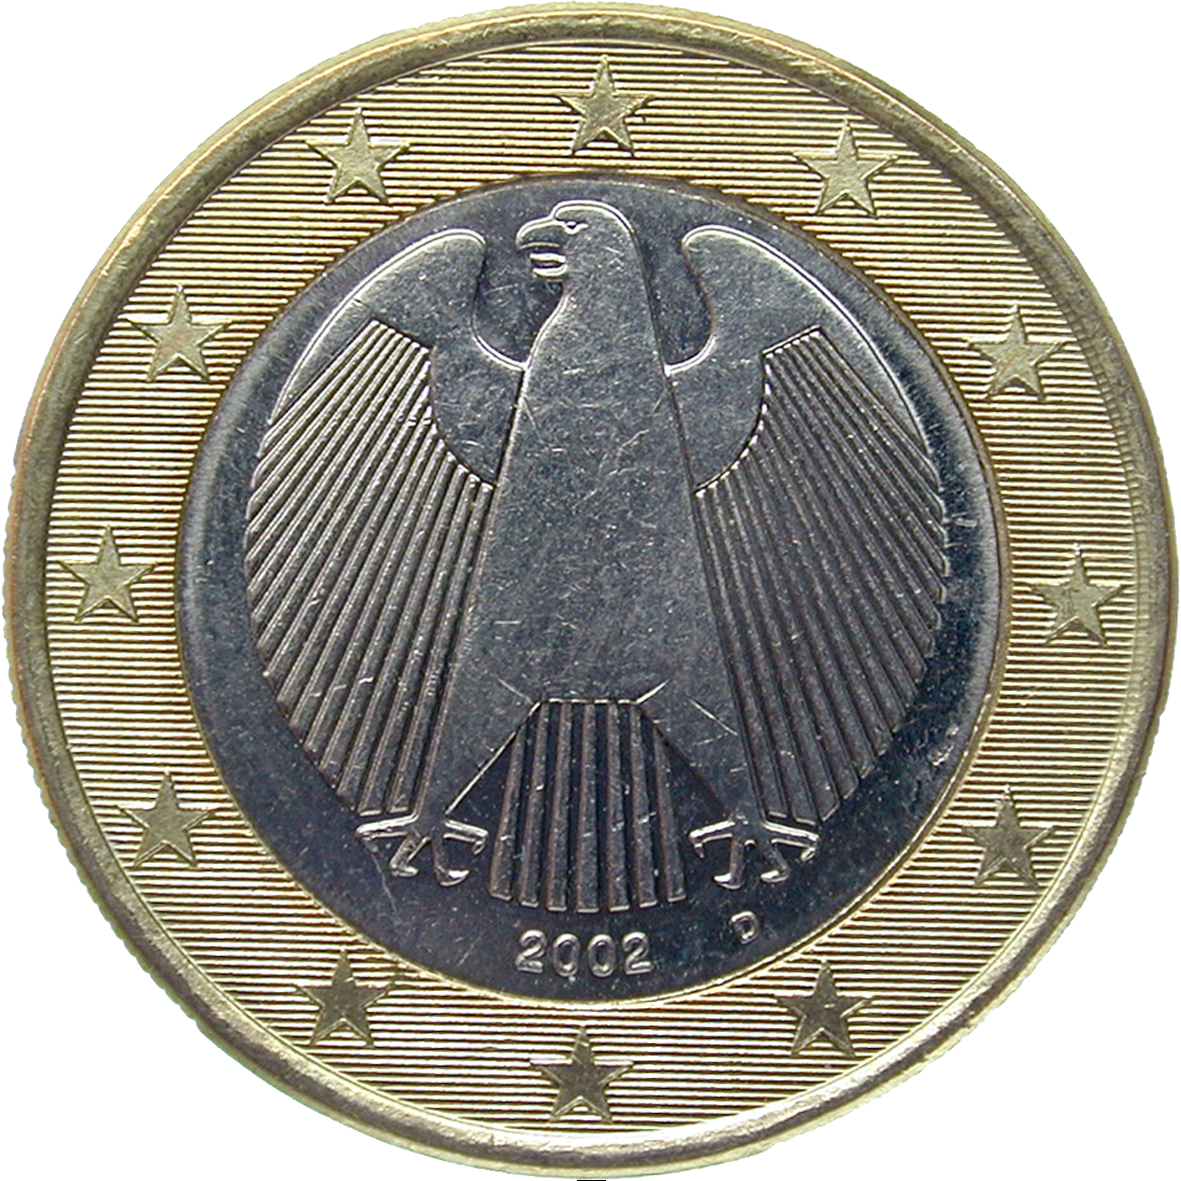 Bundesrepublik Deutschland, 1 Euro 2002 (reverse)